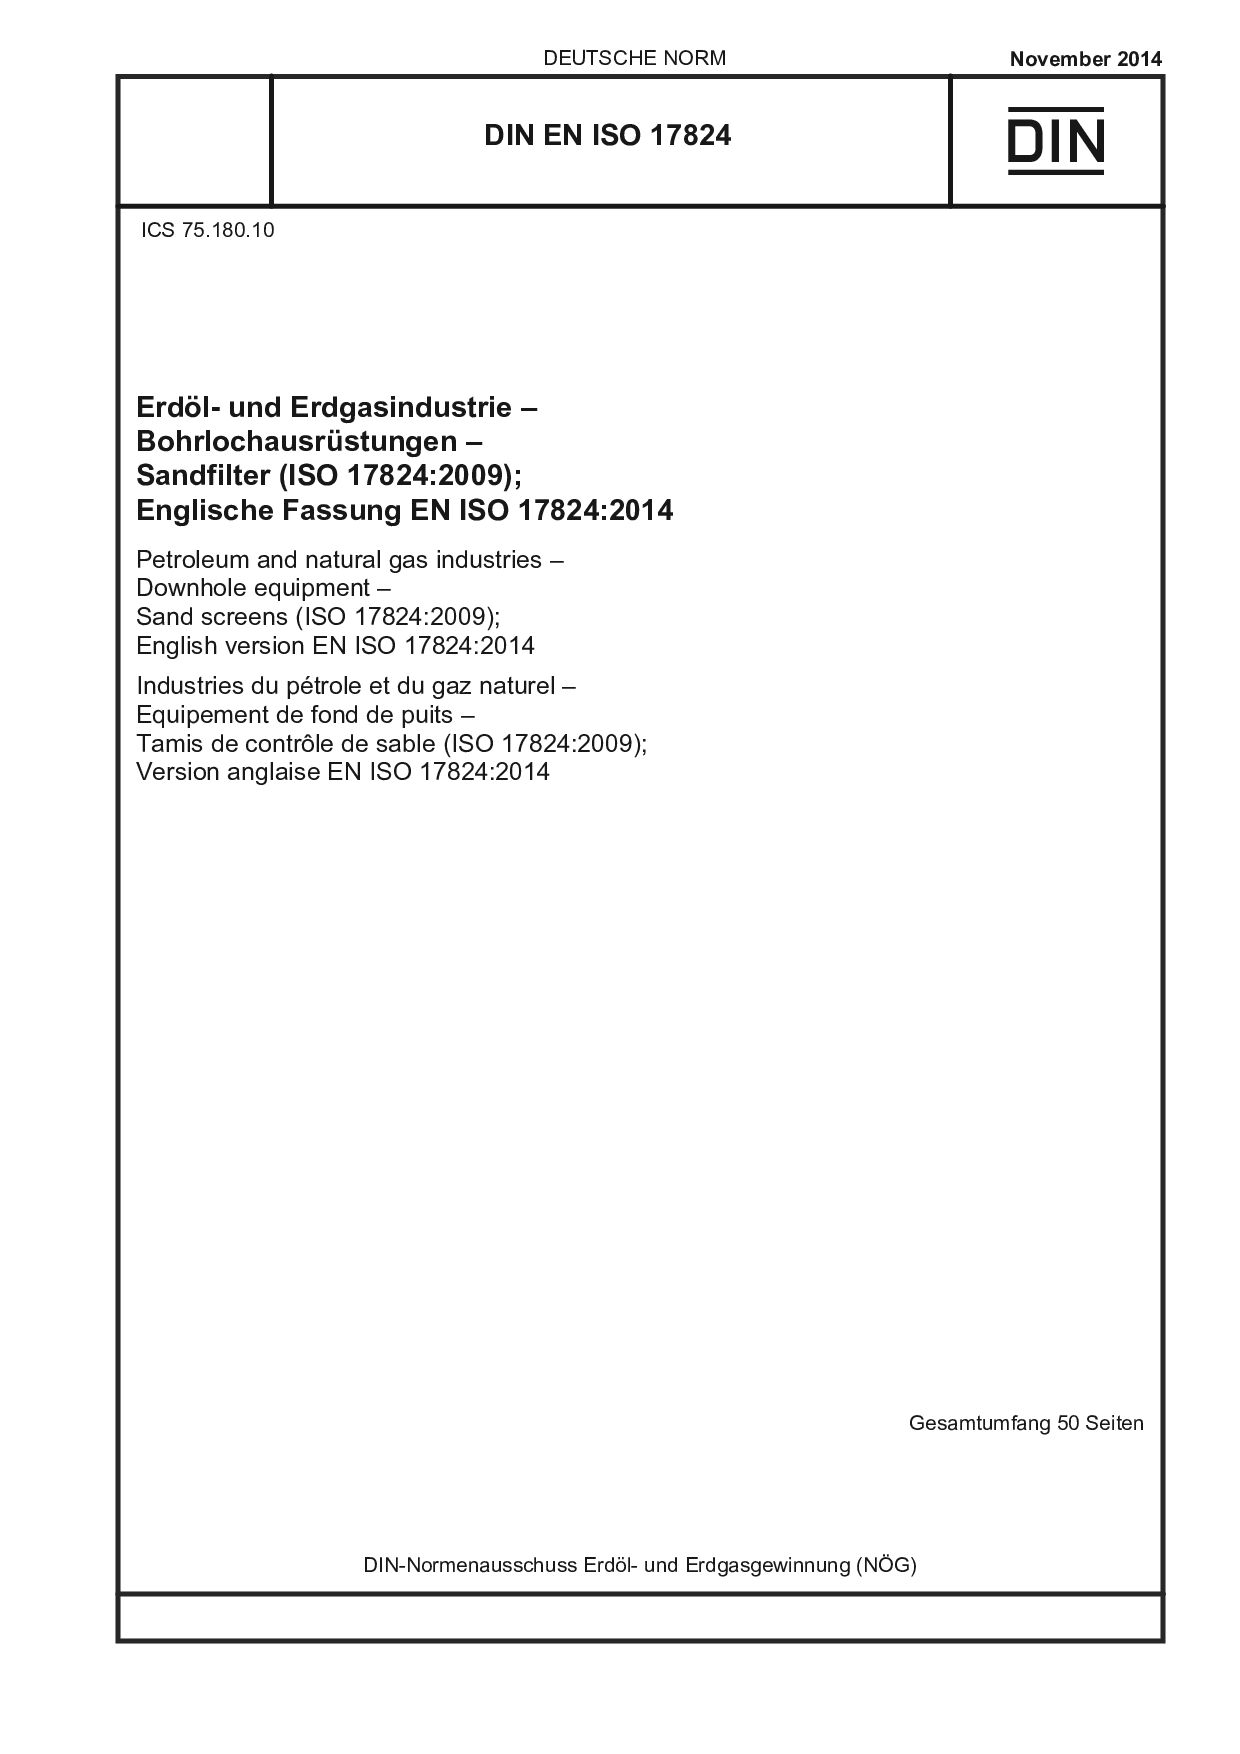 DIN EN ISO 17824:2014封面图